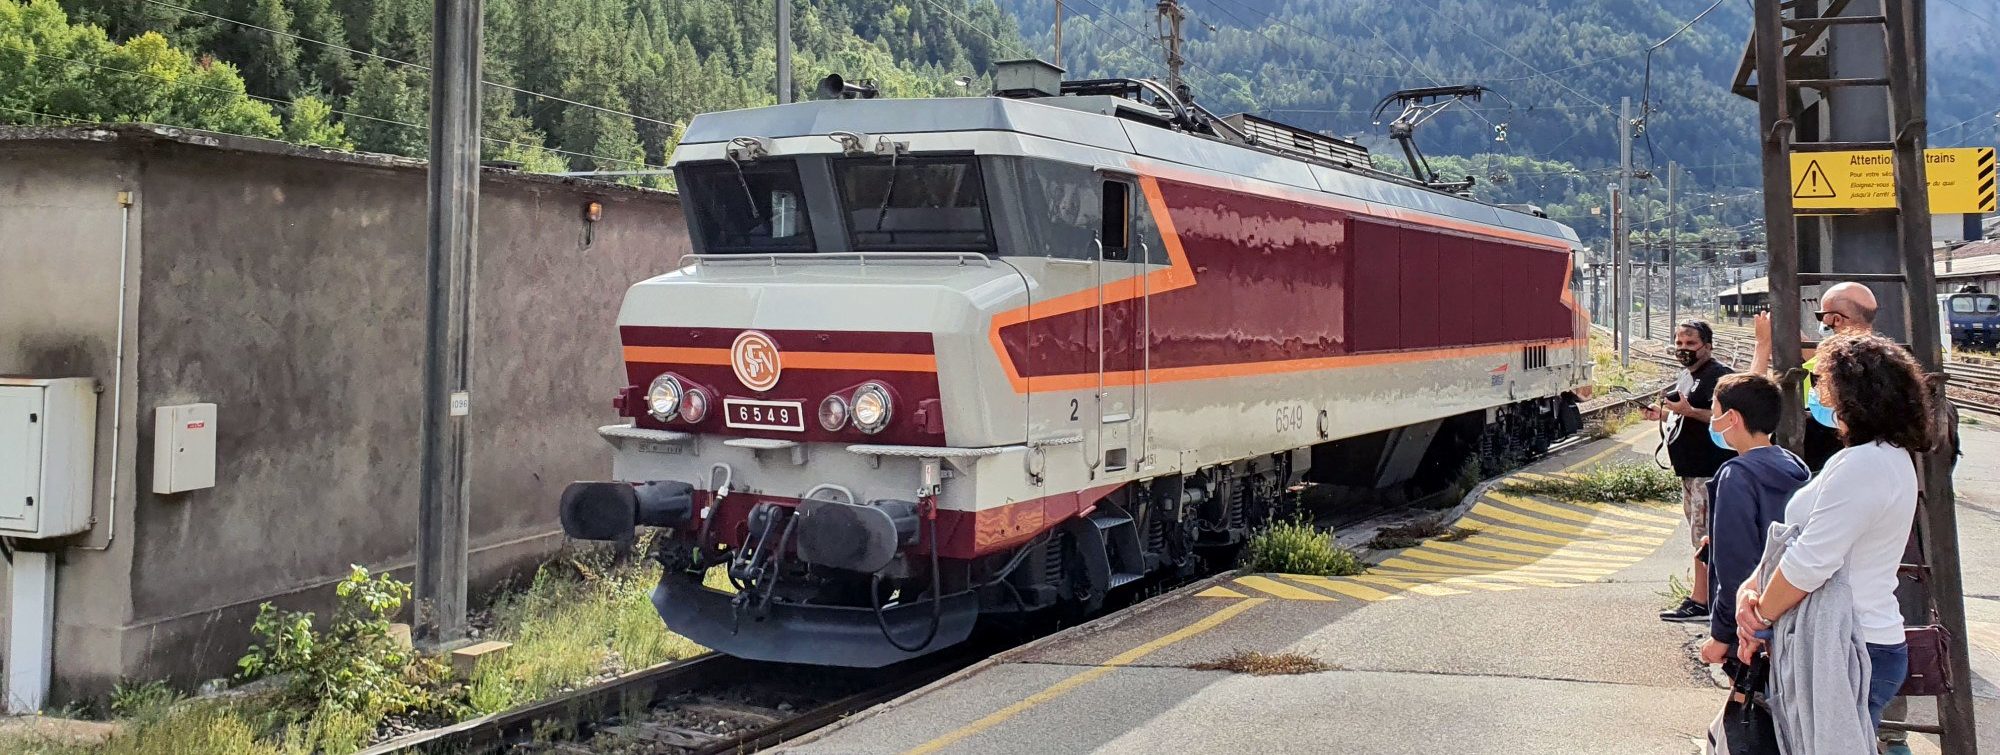 La CC 6549 à Modane lors du voyage à Modane en septembre 2020.